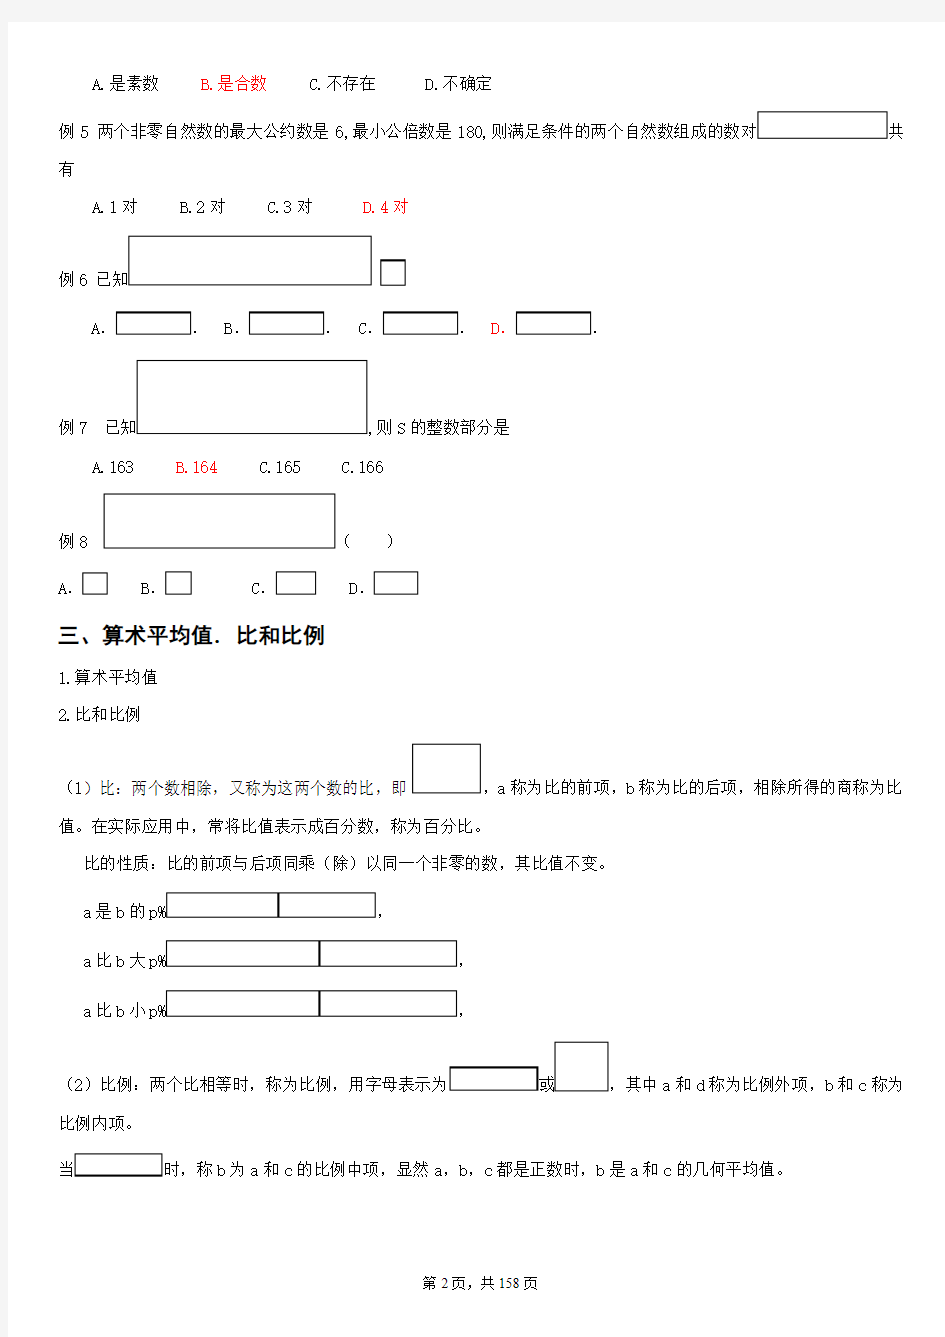 北京安通学校2011年GCT考试数学系统班讲义[1]